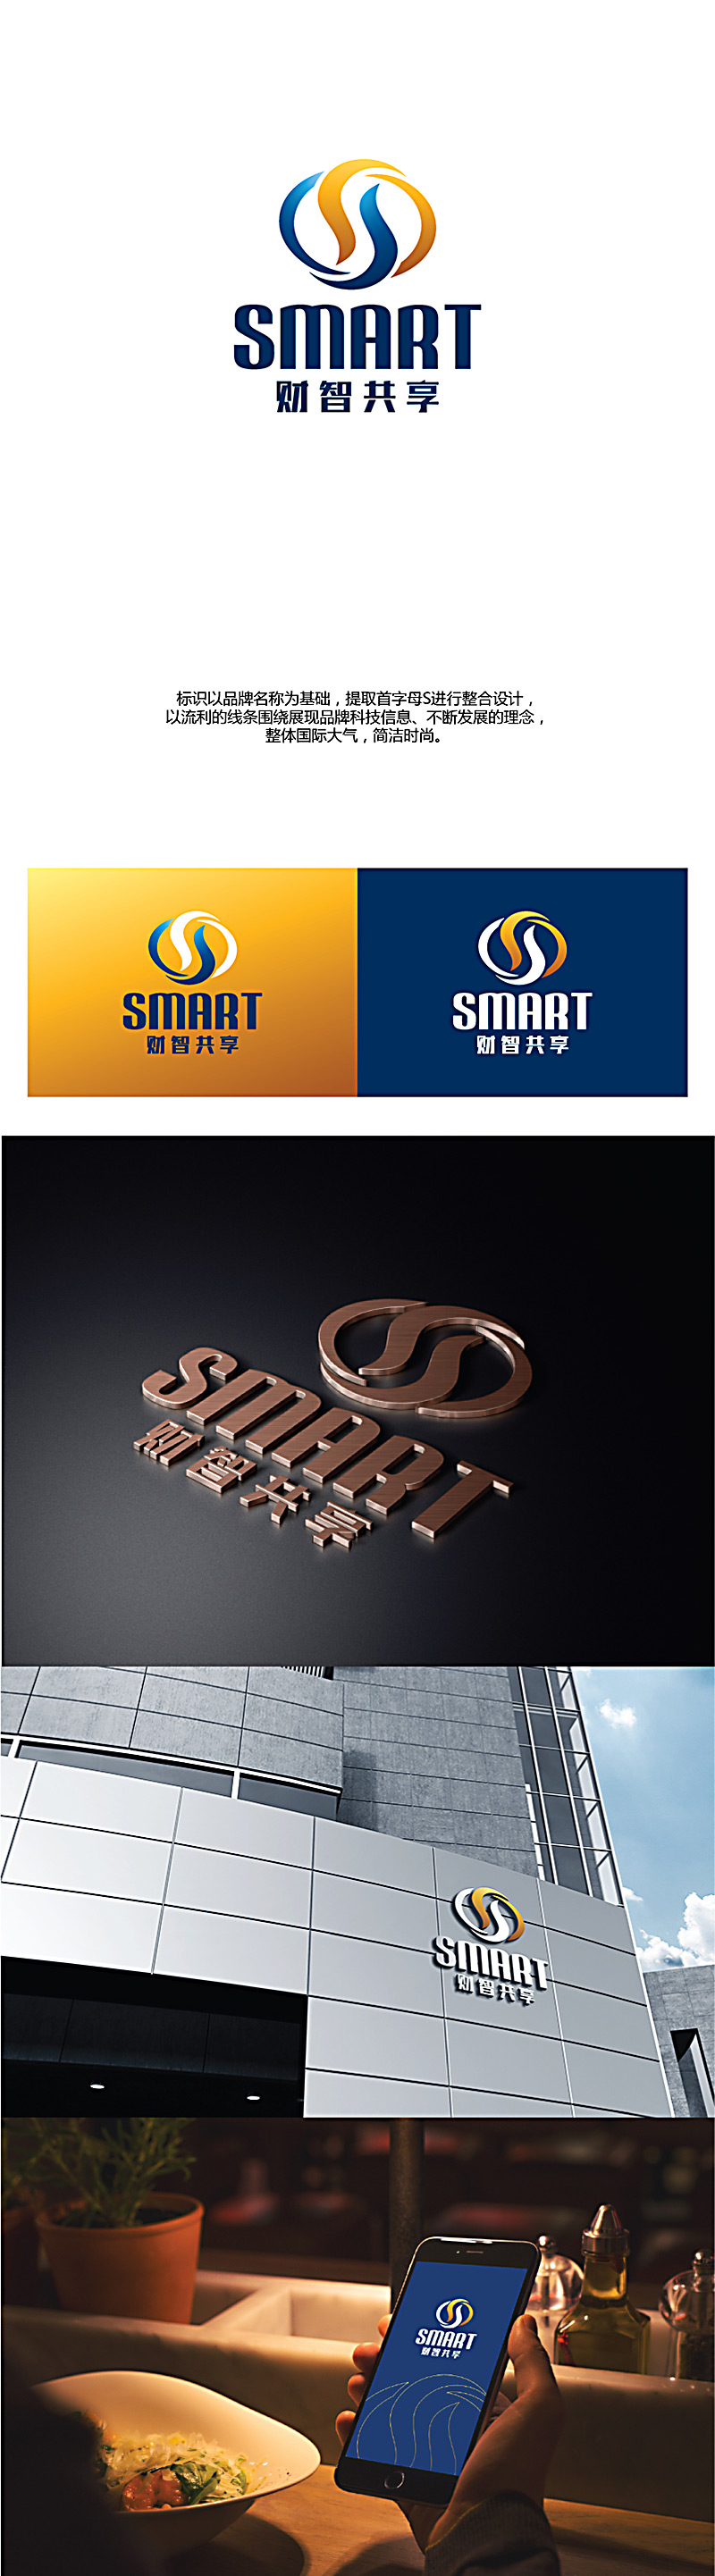 陈兆松的财智共享（北京）技术服务有限公司logo设计